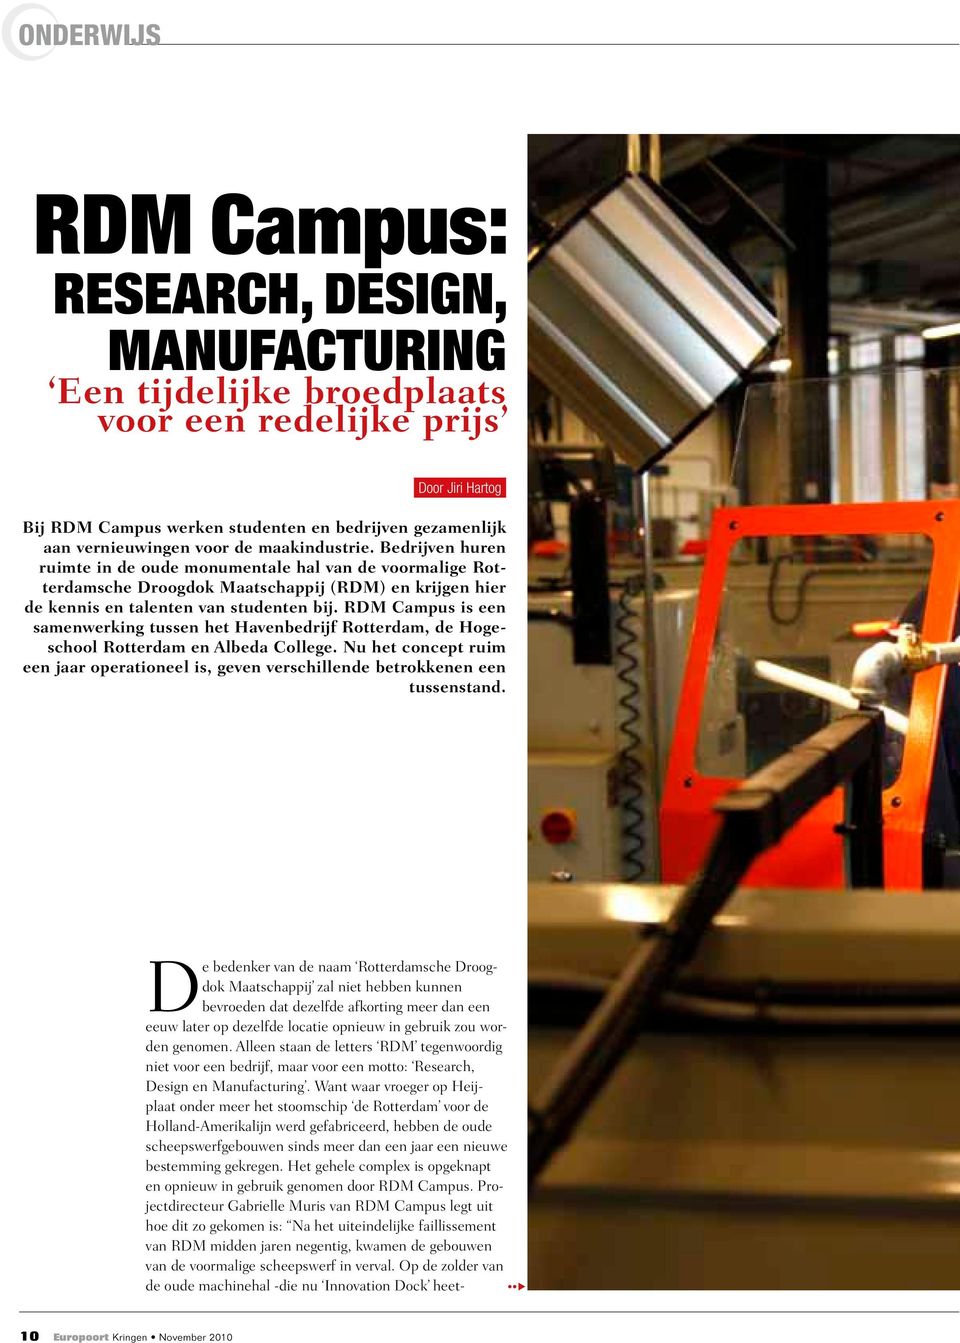 RDM Campus is een samenwerking tussen het Havenbedrijf Rotterdam, de Hogeschool Rotterdam en Albeda College.